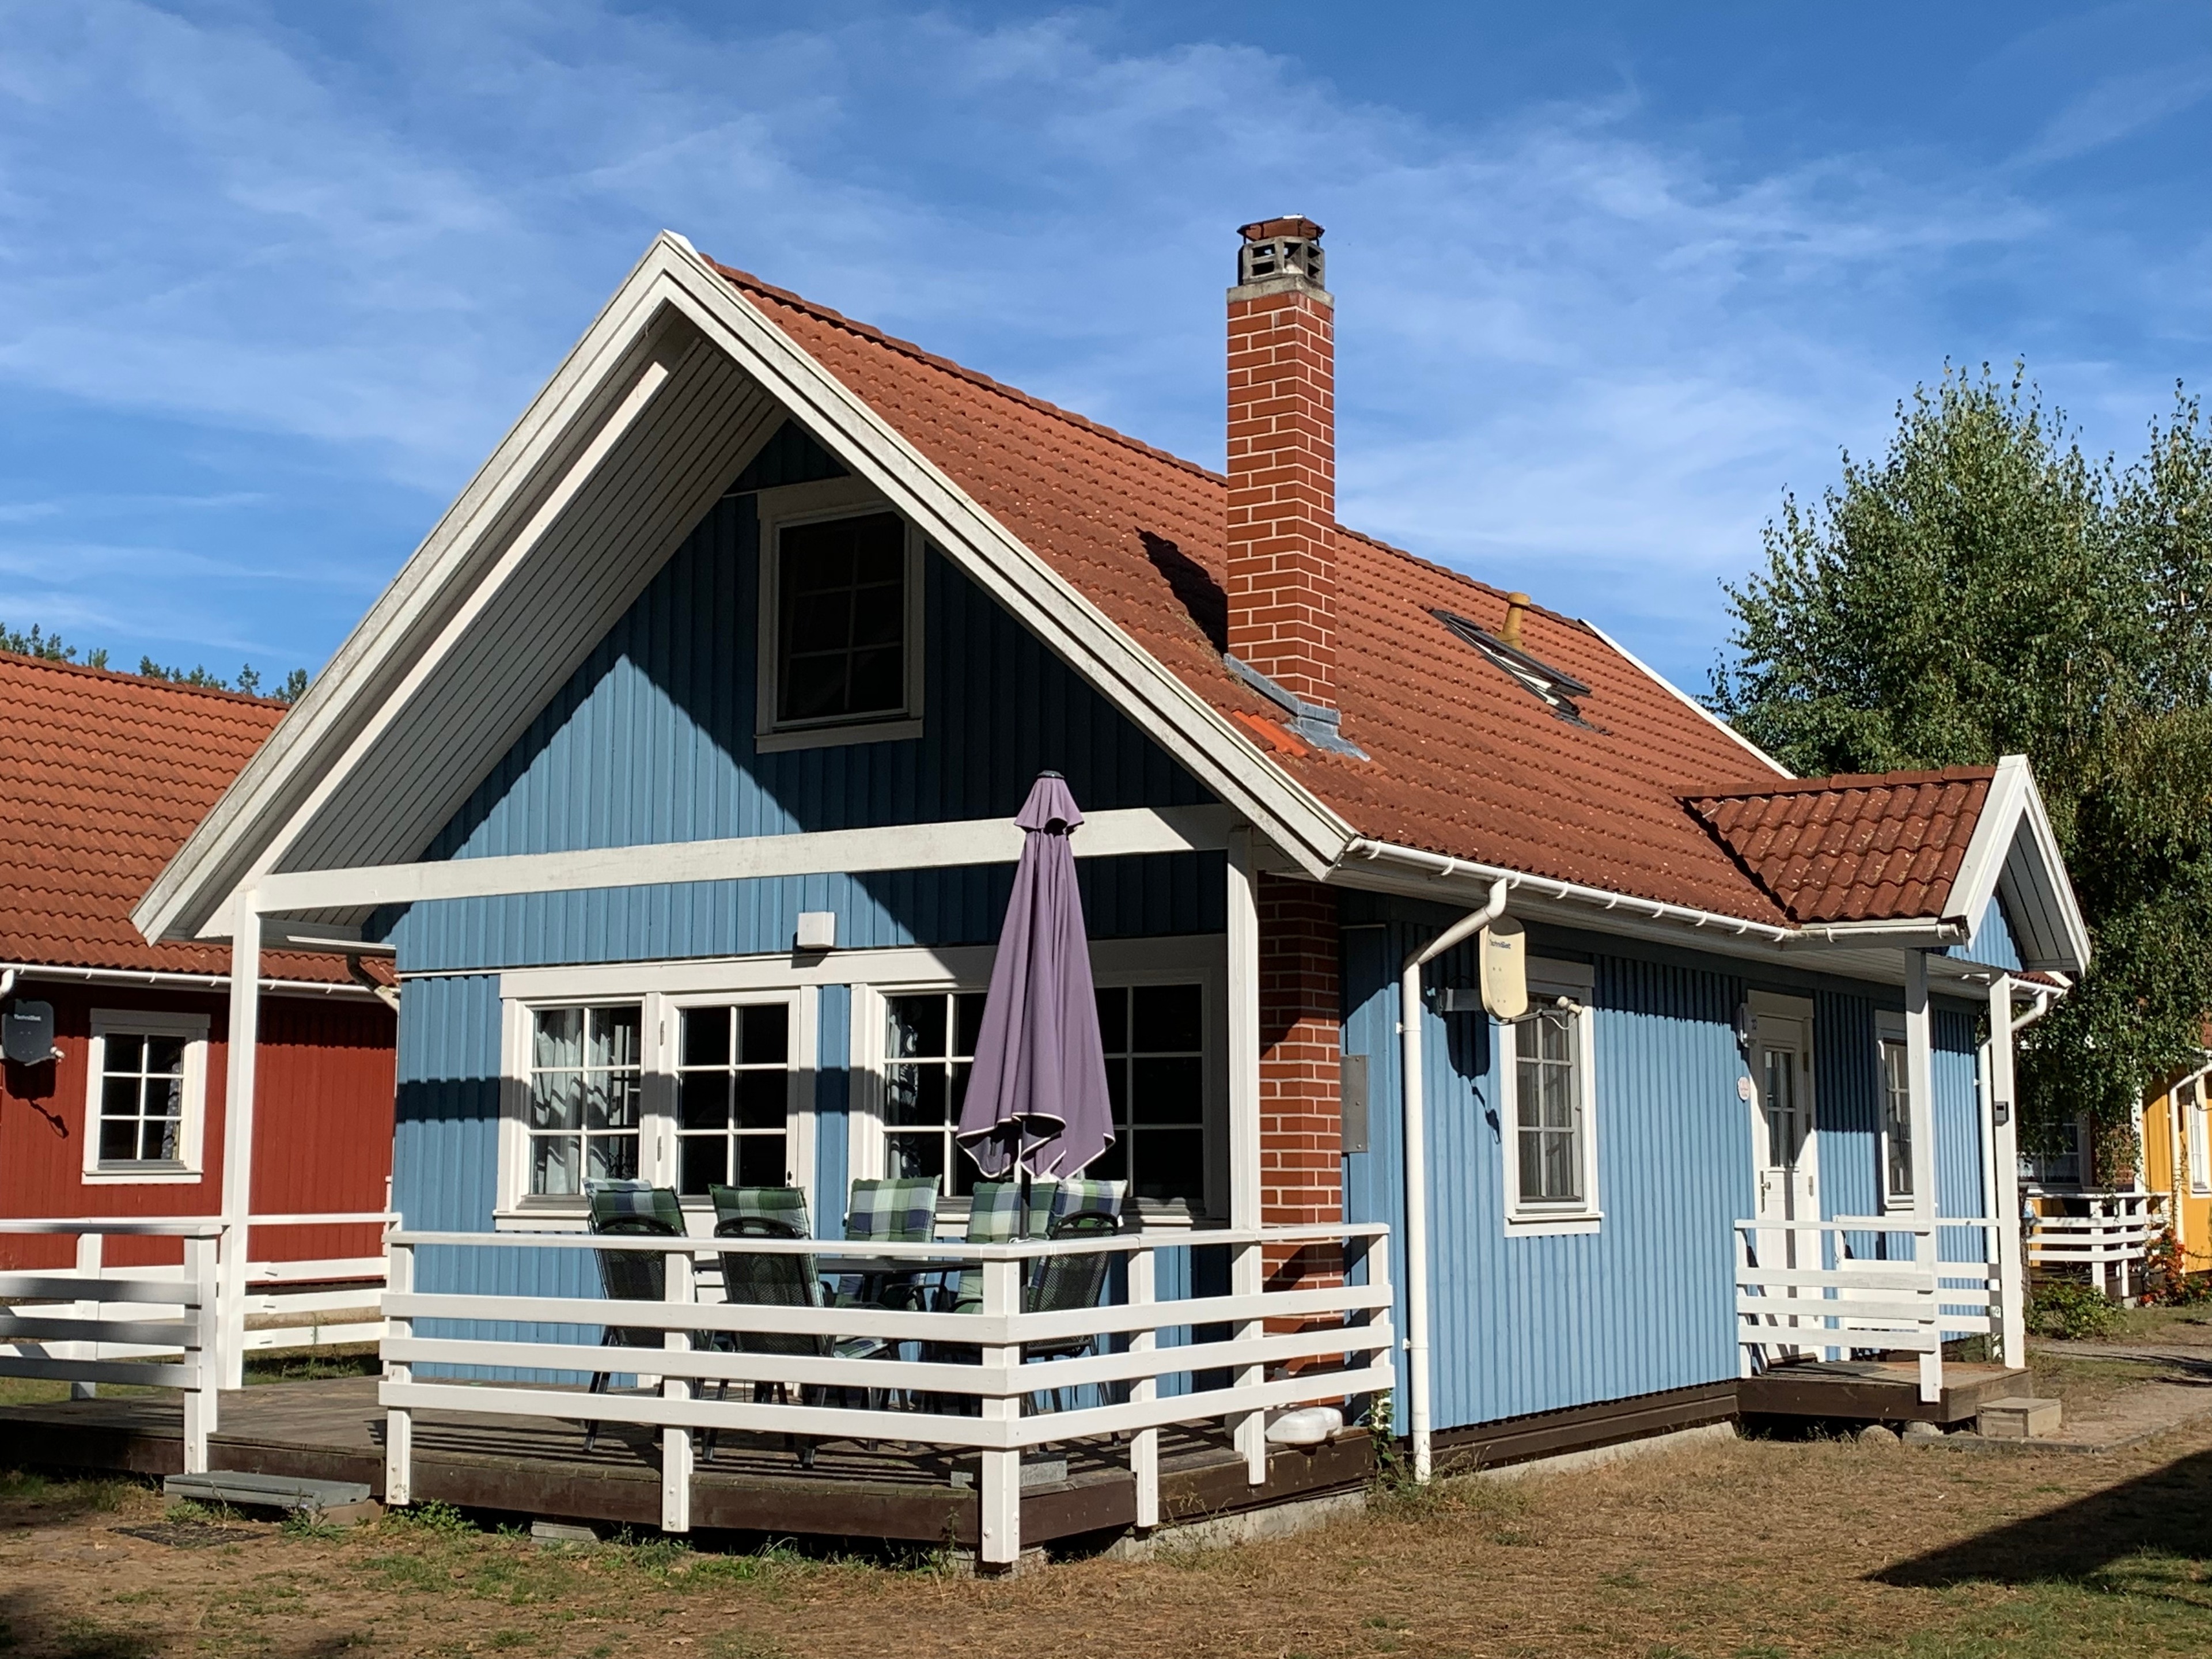 Villa Blau am Useriner See Ferienhaus in Mecklenburg Vorpommern